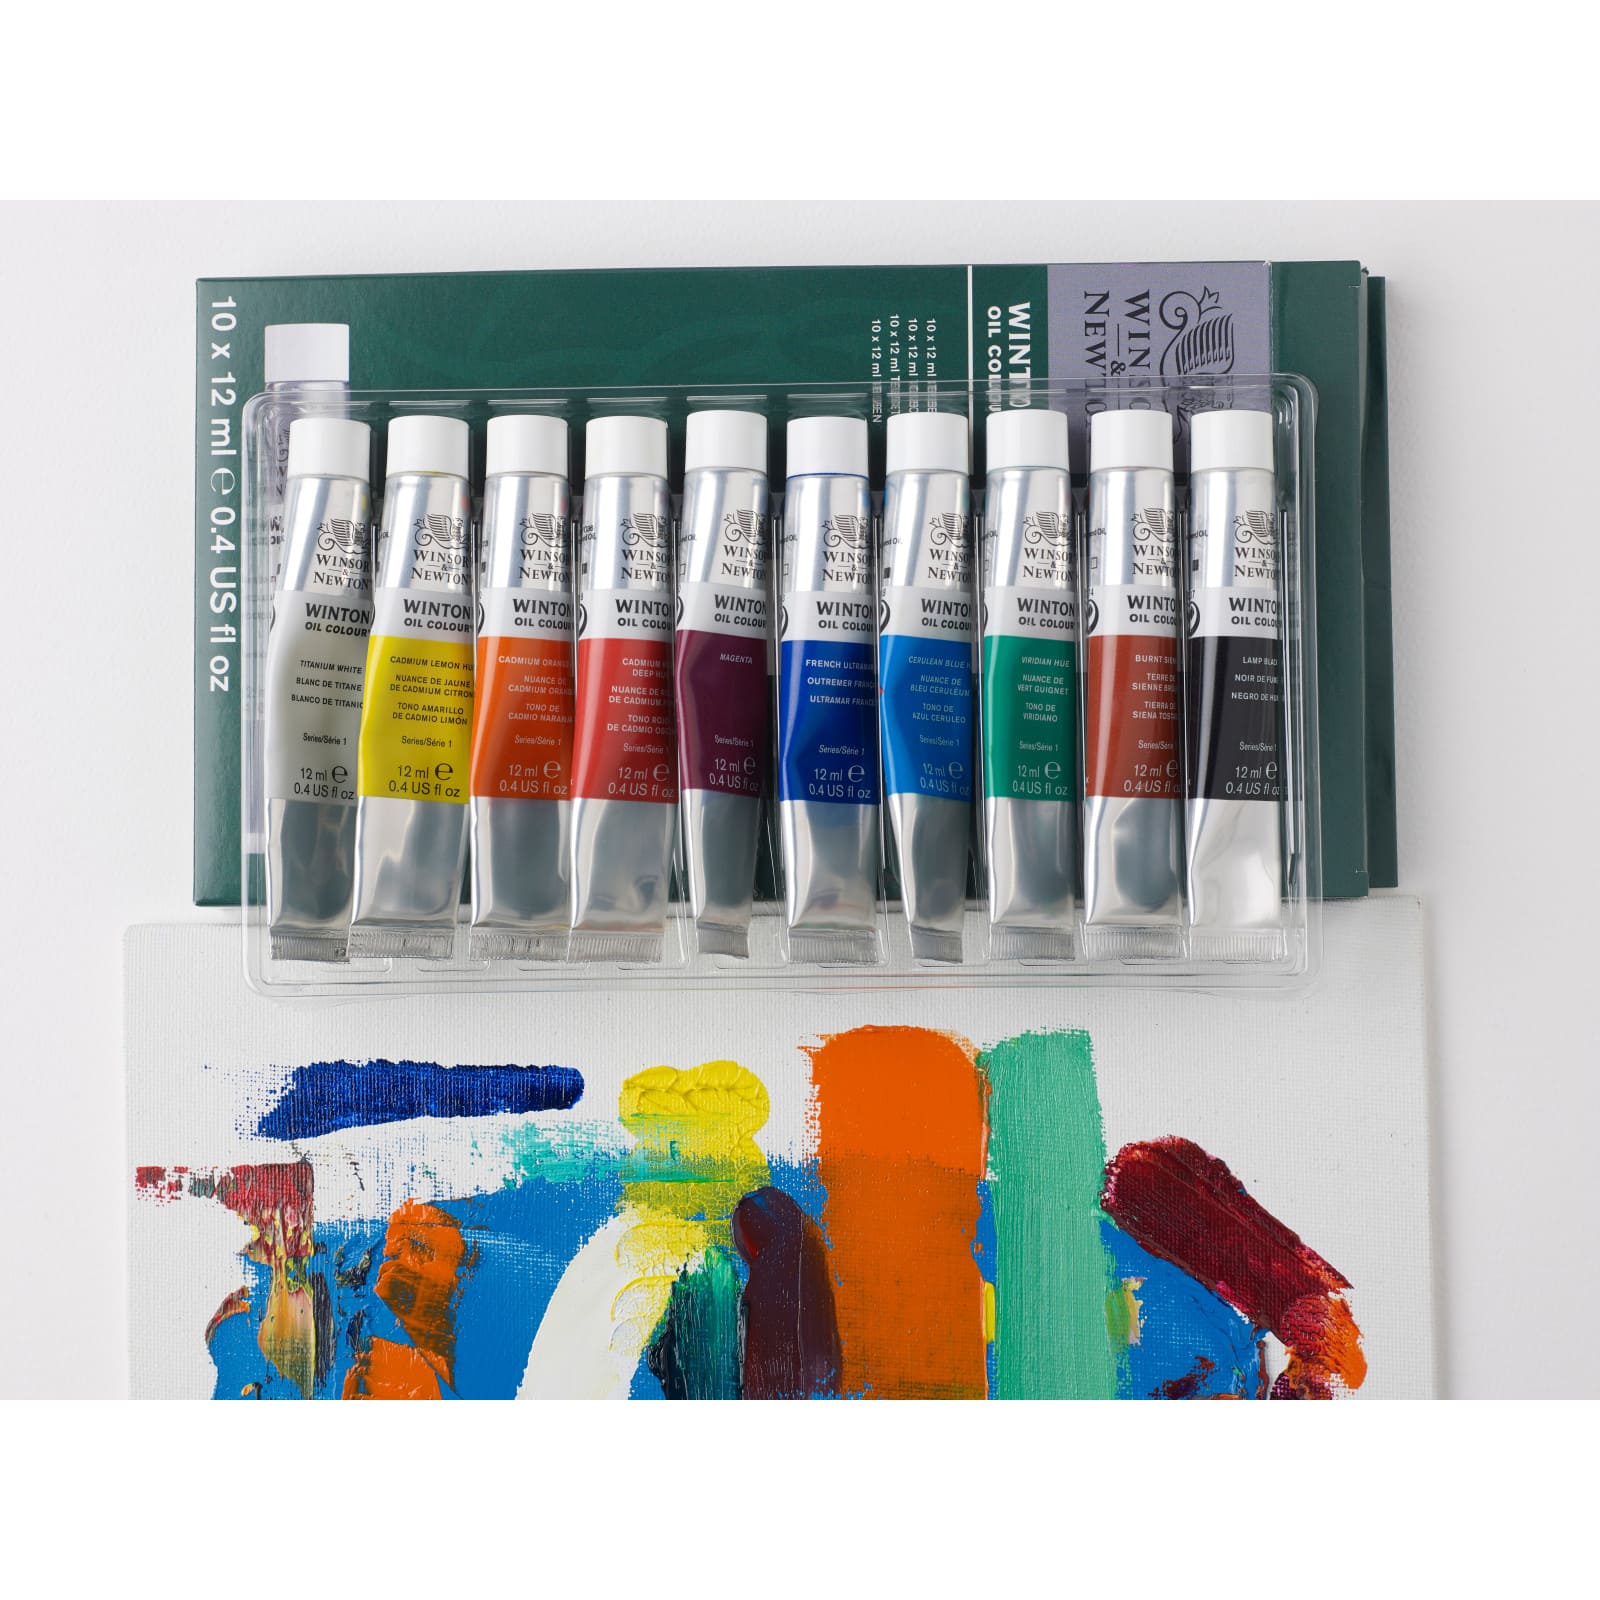 Winsor &#x26; Newton&#x2122; Winton Oil Colour&#x2122; 10 Color Paint Set